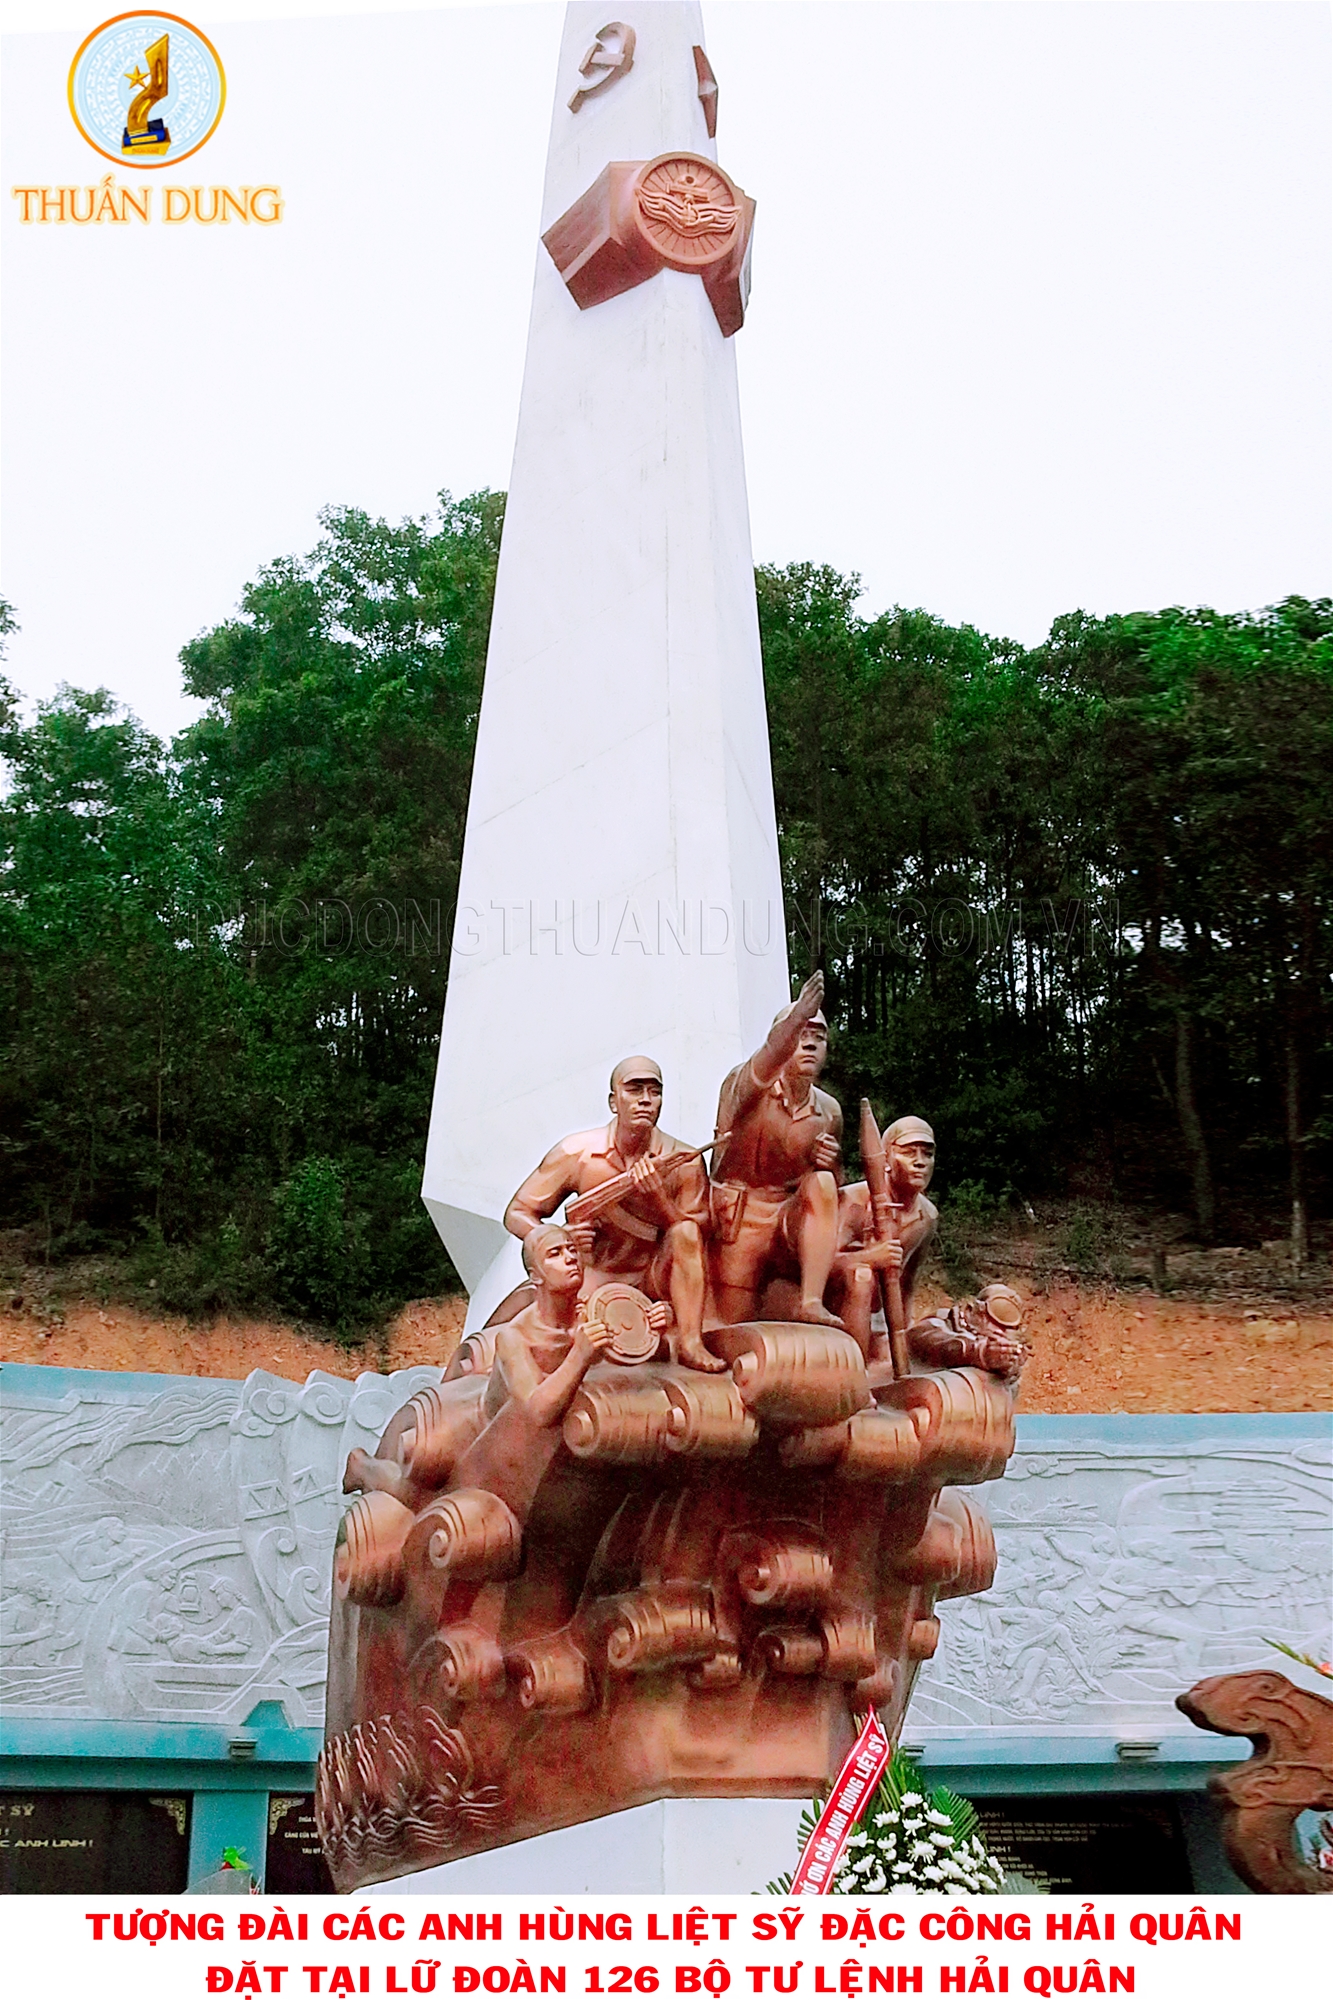 Năm 2015: Đúc tượng đài liệt sĩ đặc công Hải quân huyện Thủy Nguyên, Hải Phòng chất liệu bằng đồng đỏ, nặng 18 tấn